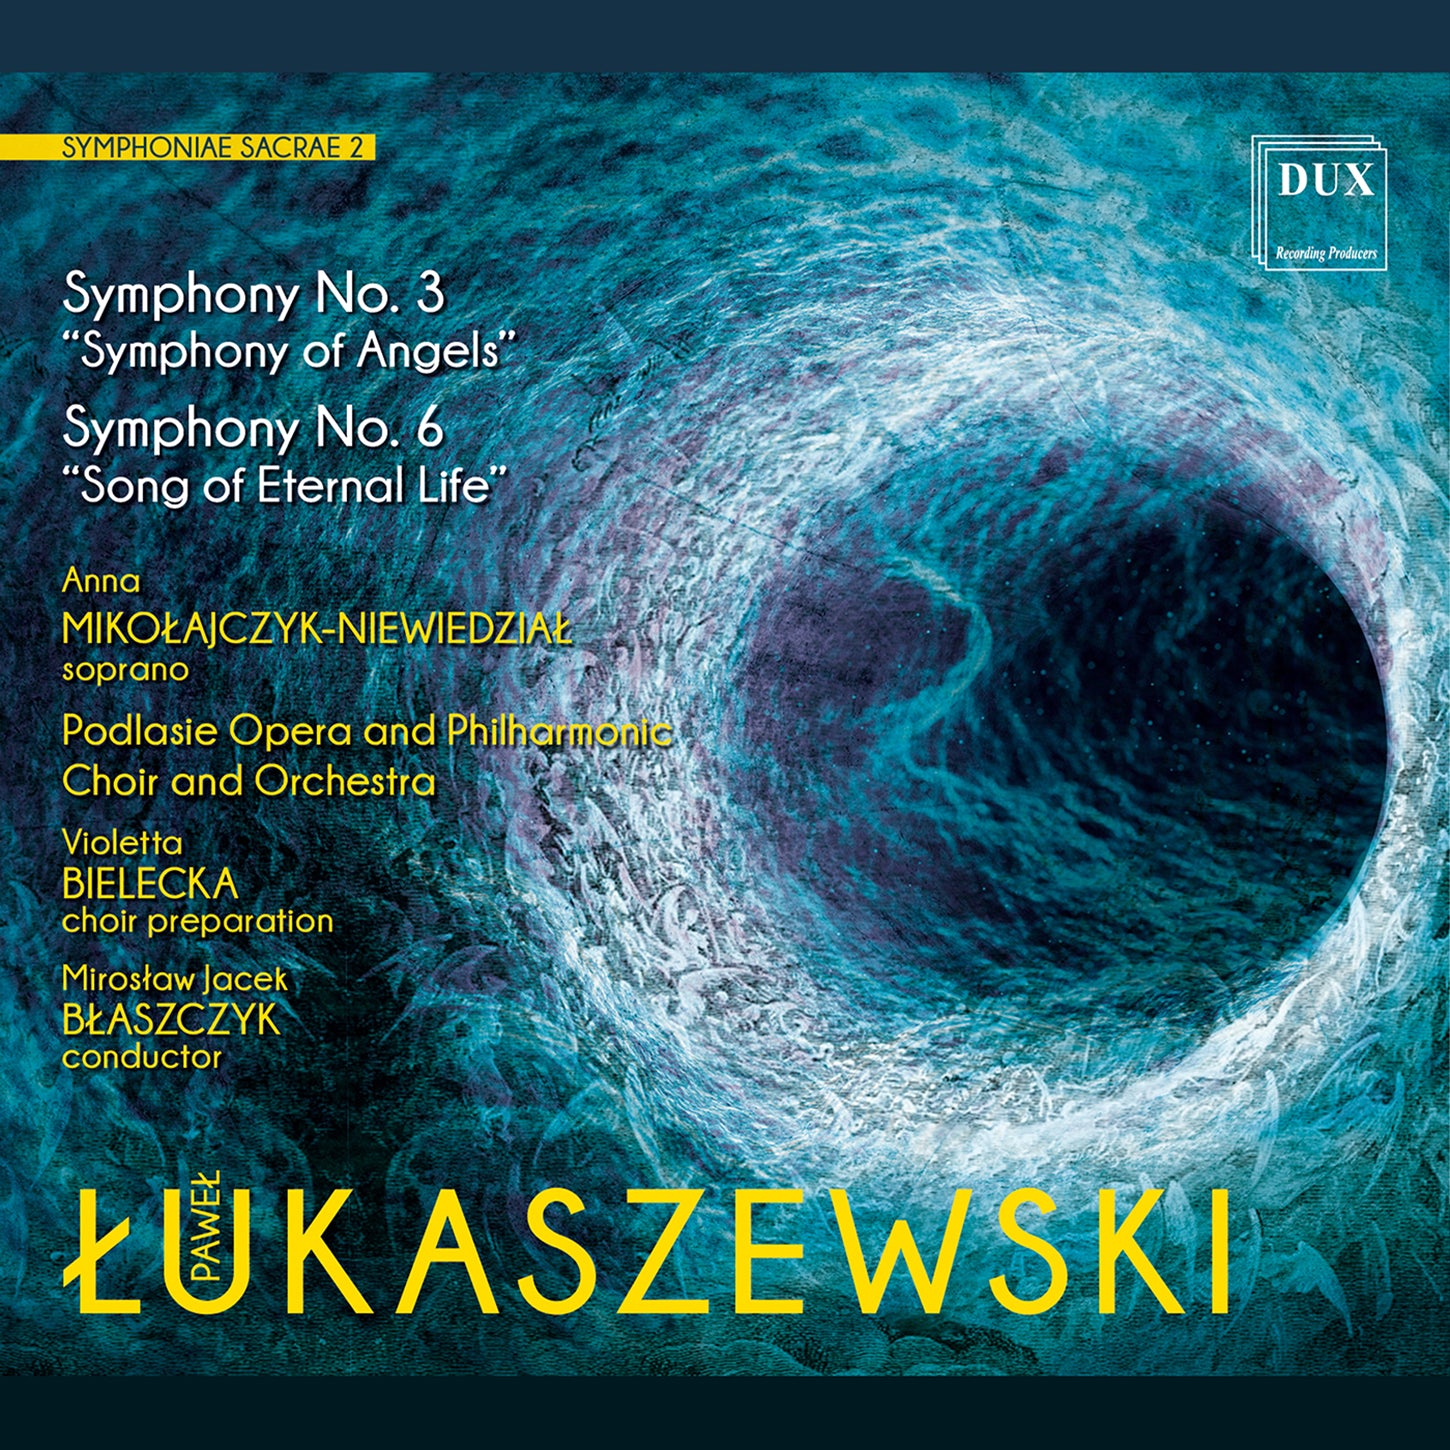 Lukaszewski: Symphoniae Sacrae 2 / Blaszczyk, Mikolajczyk-Niewiedzial, Podlasie Opera and Philharmonic Choir and Orchestra